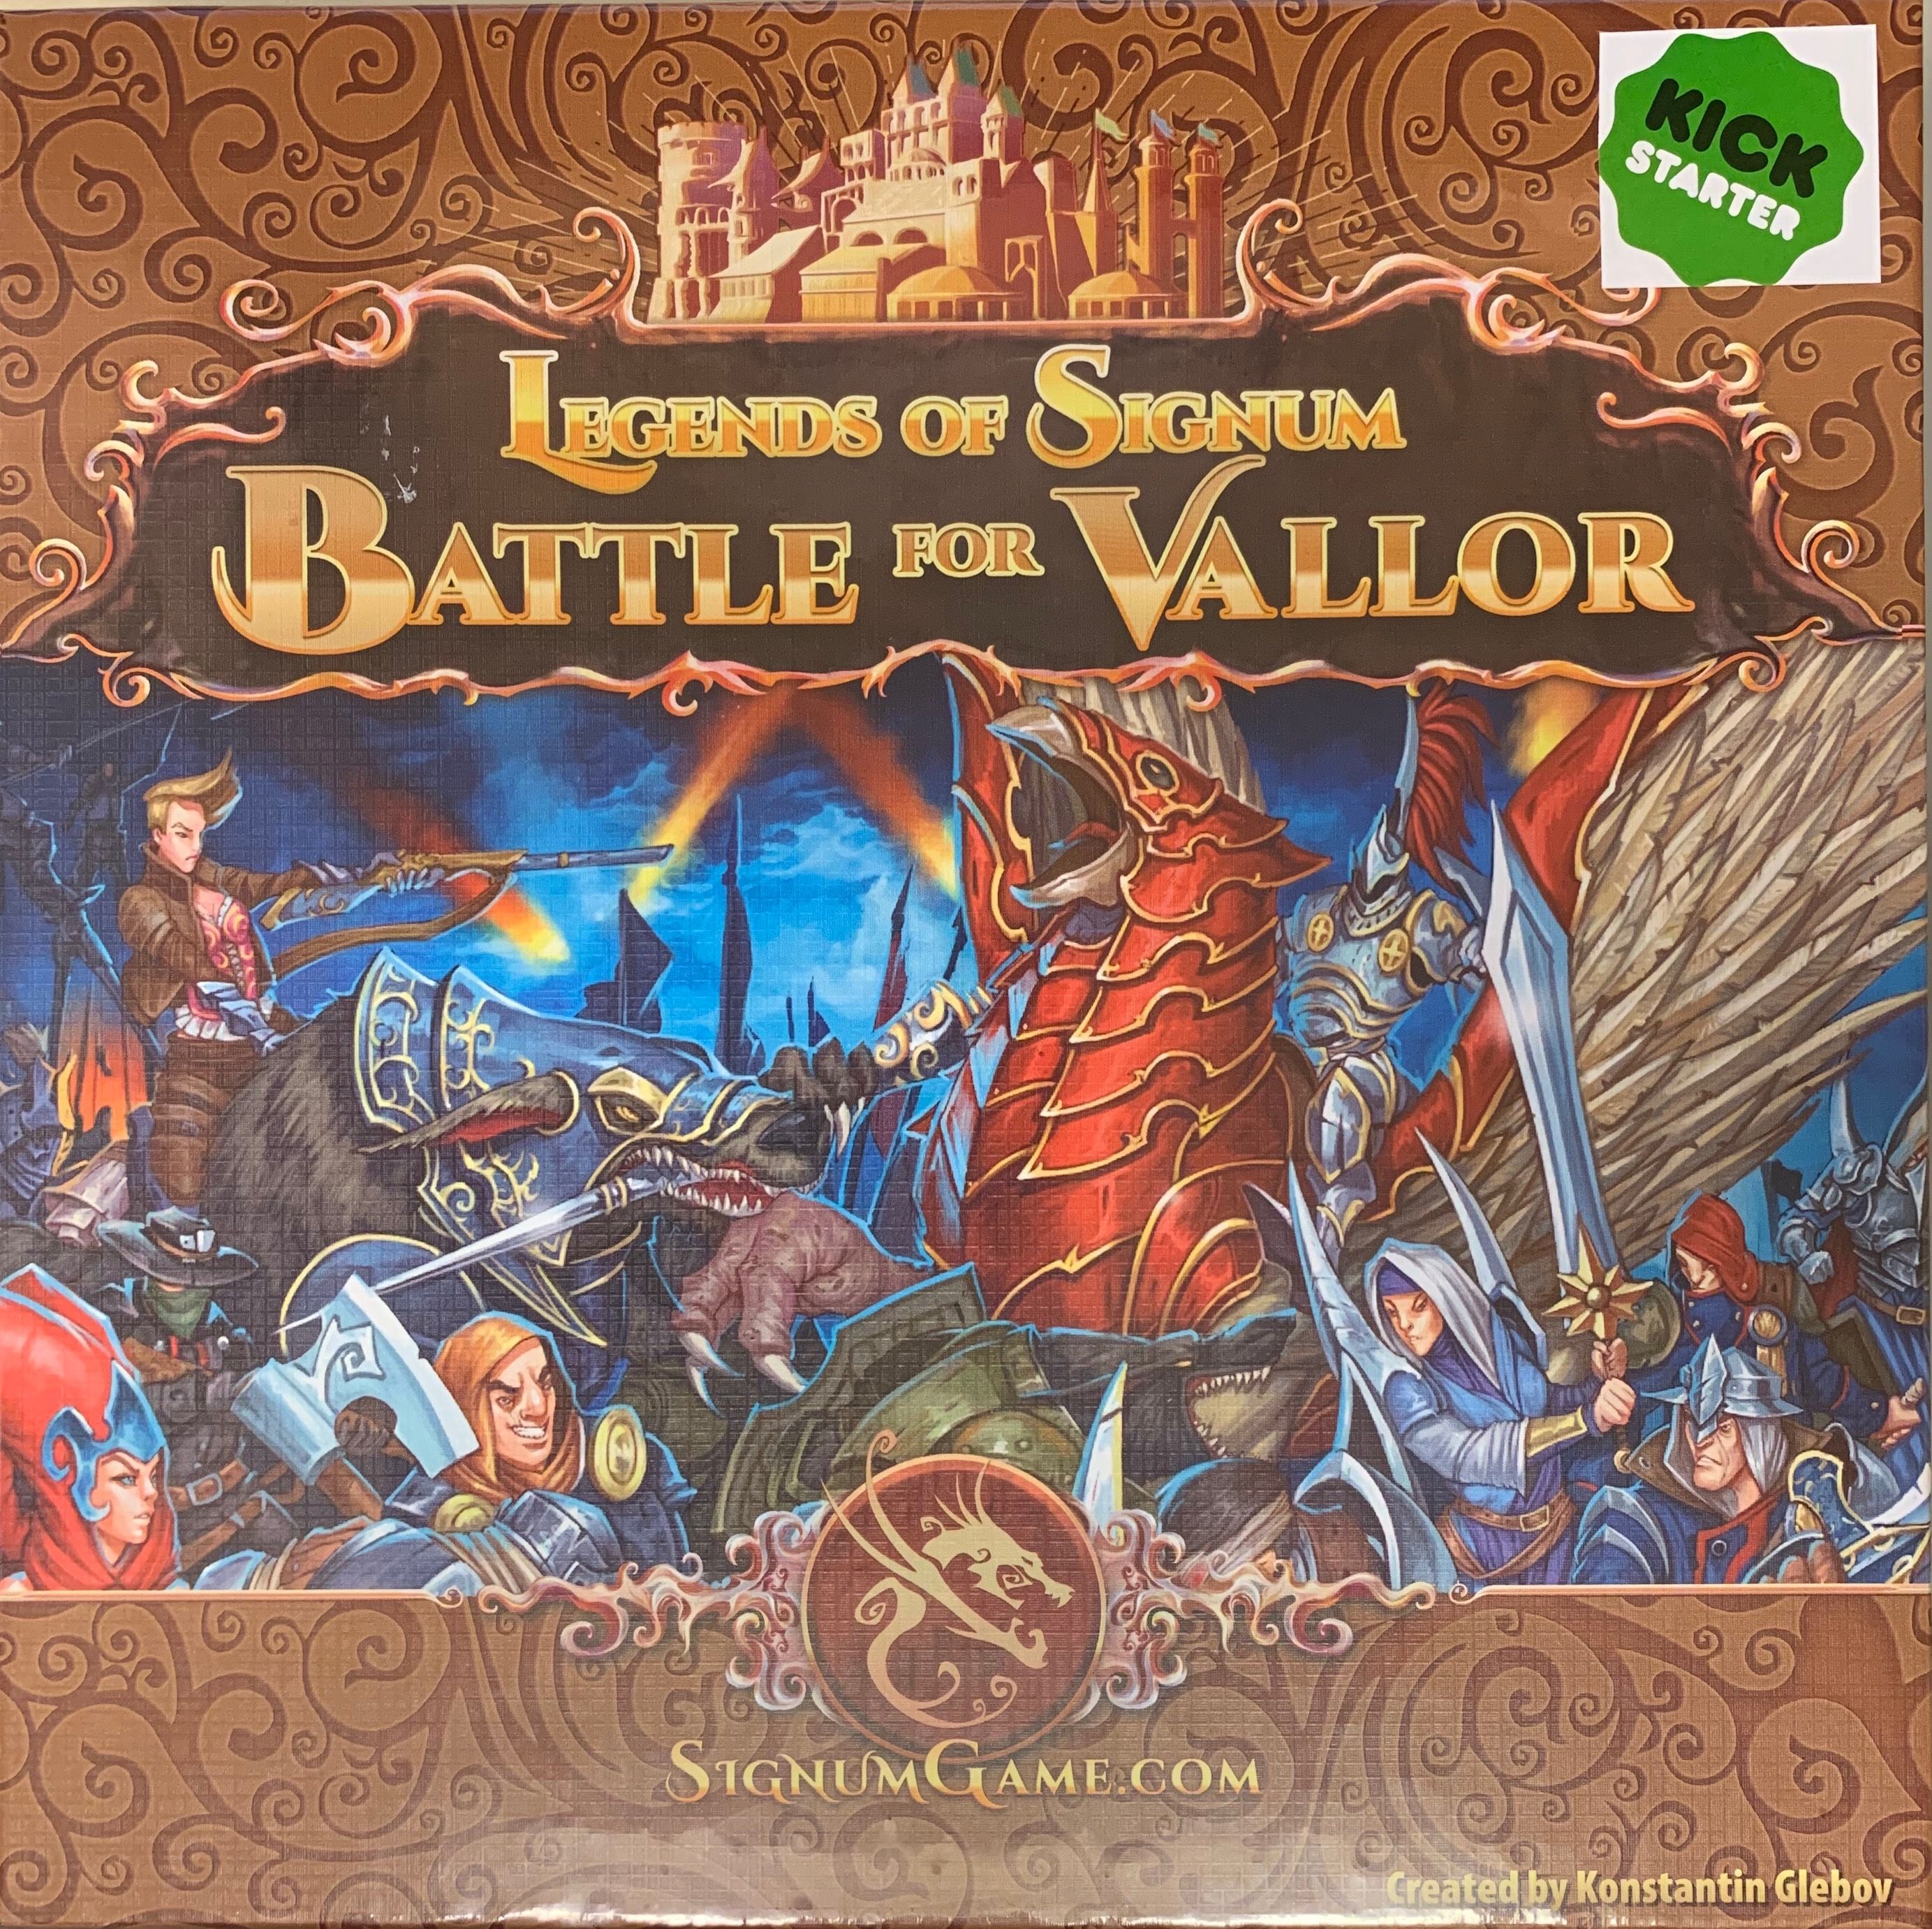 Legends of Signum: Battle for Vallor